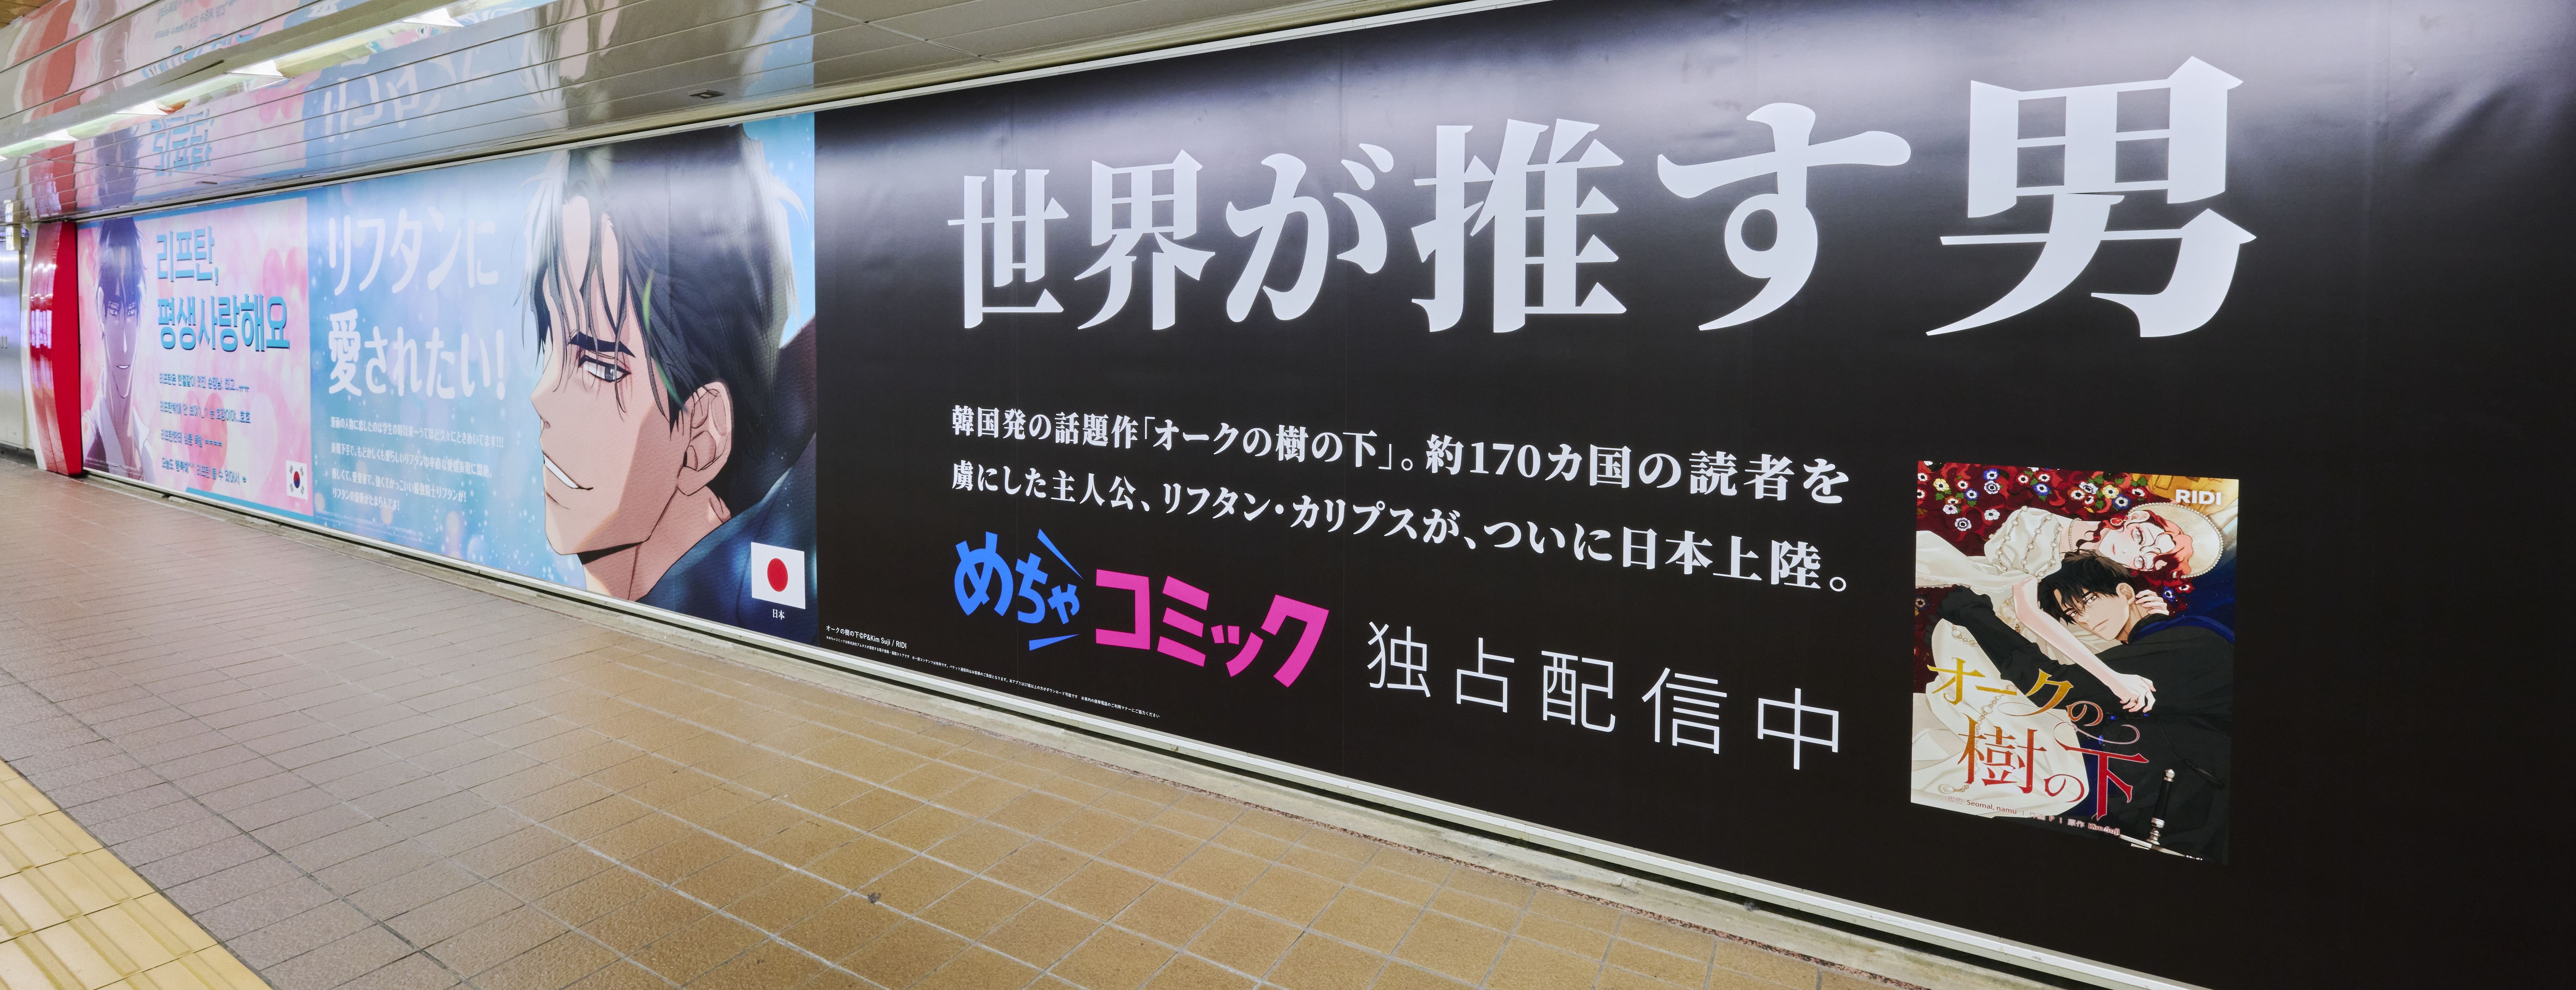 新宿駅_5607s.jpg